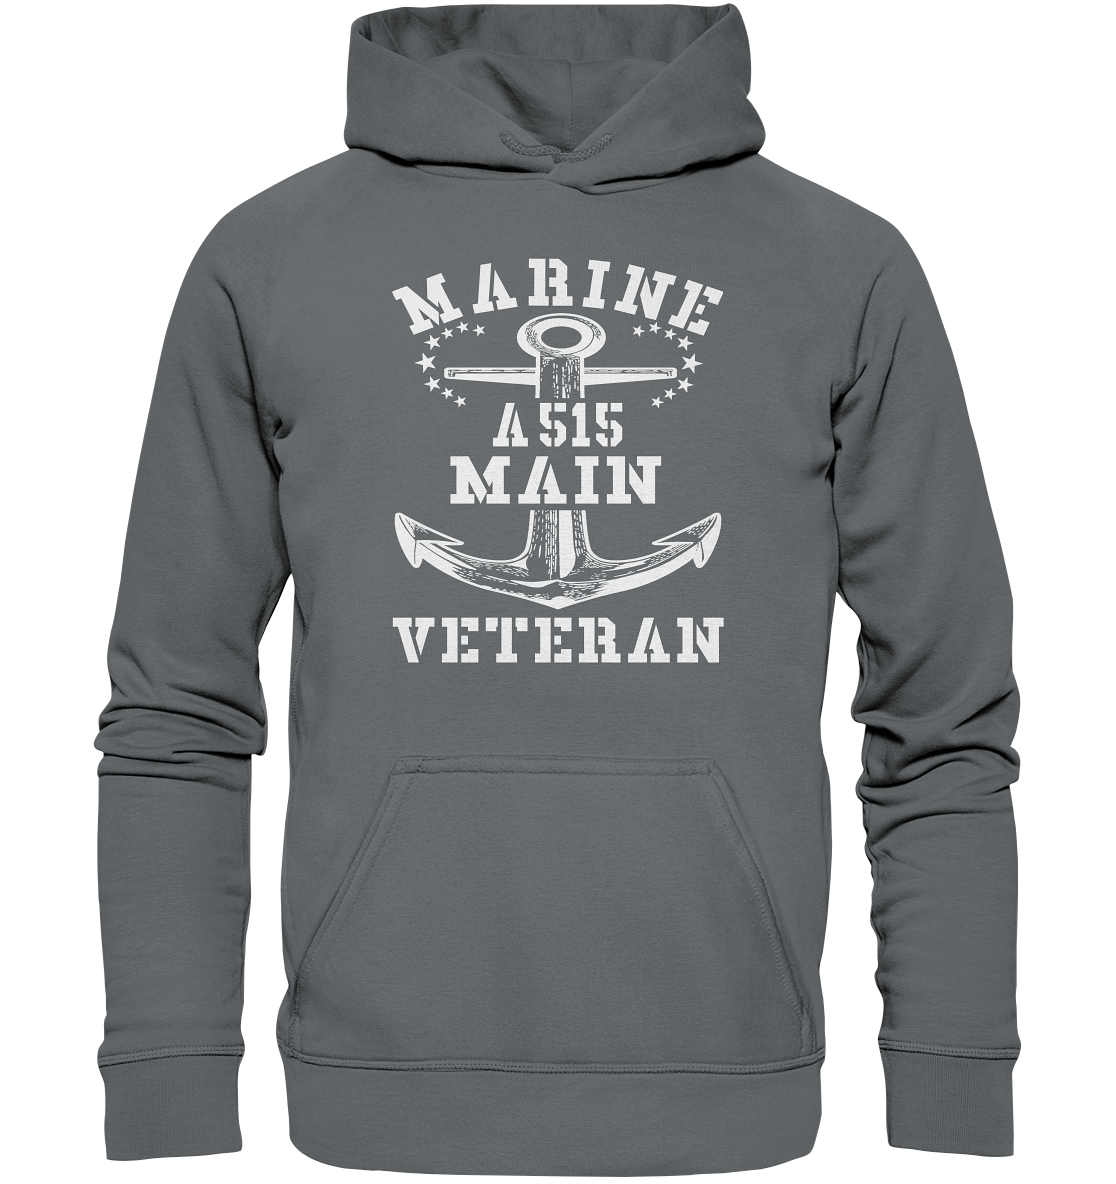 Tender A515 MAIN Marine Veteran  - Basic Unisex Hoodie